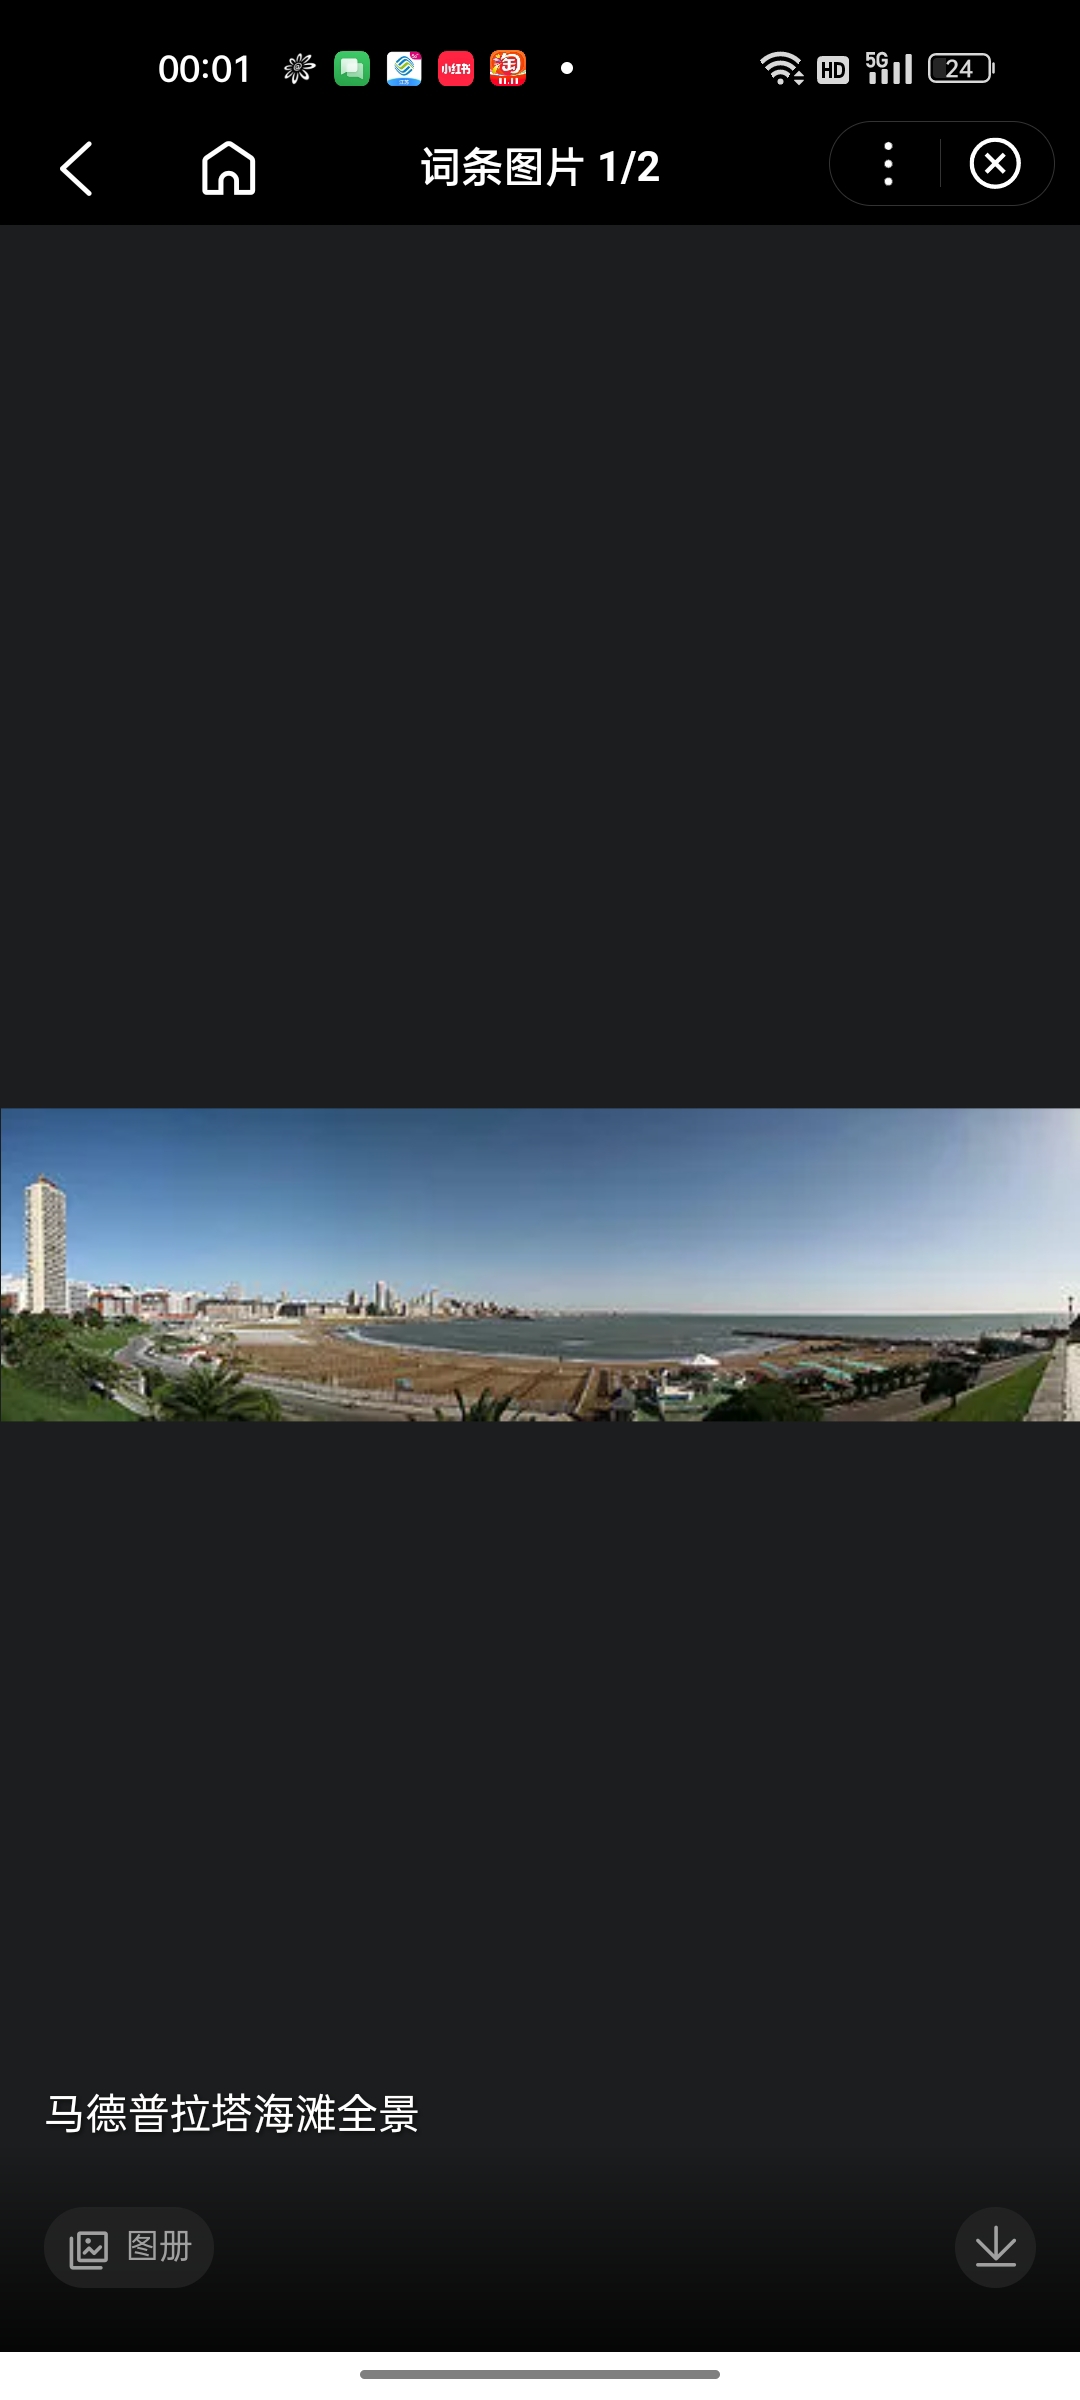 马德普拉塔(Mardel Plata)意为“银海”，是著名的海滨避暑胜地，位于布宜诺斯艾利斯以南37